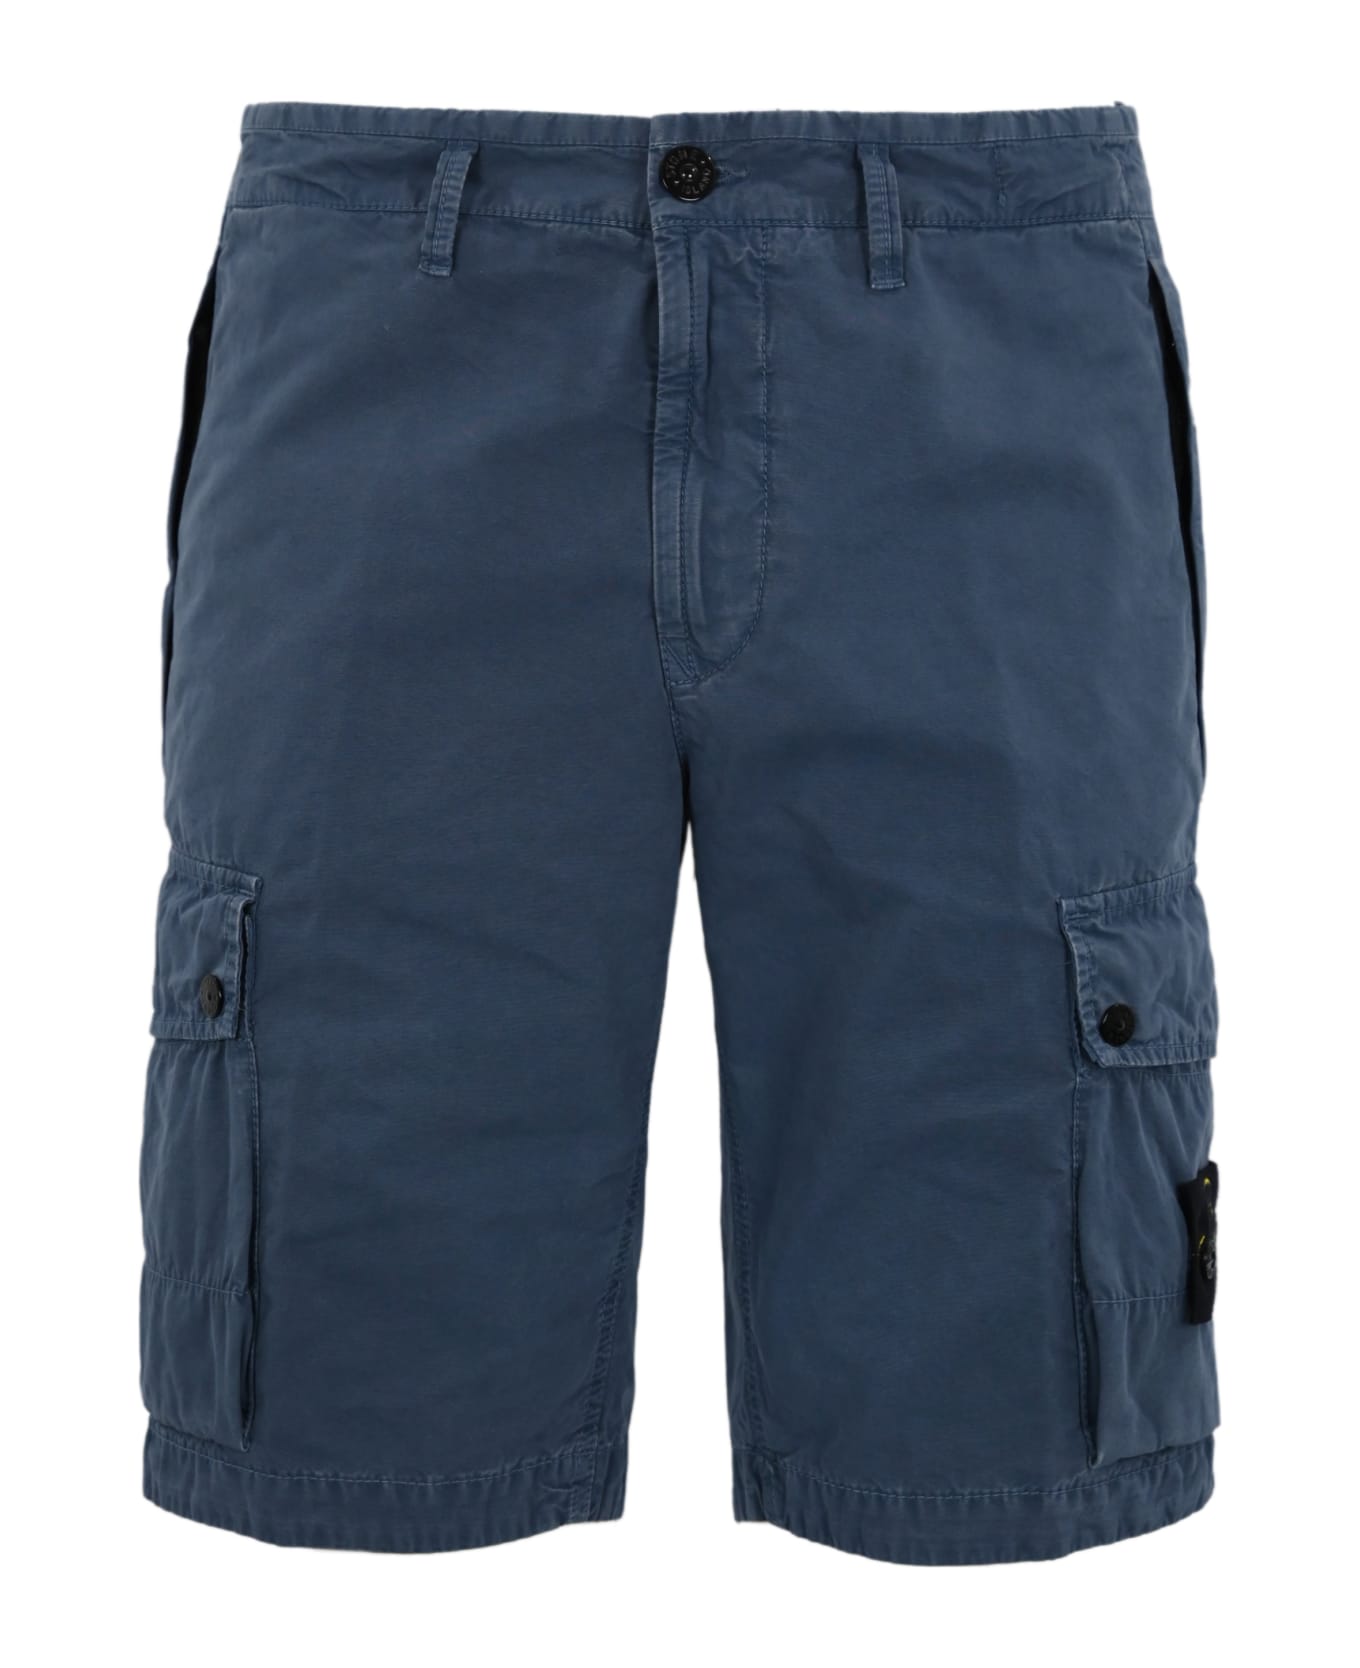 Stone Island Bermuda Shorts In Cotton Canvas - Blue ショートパンツ